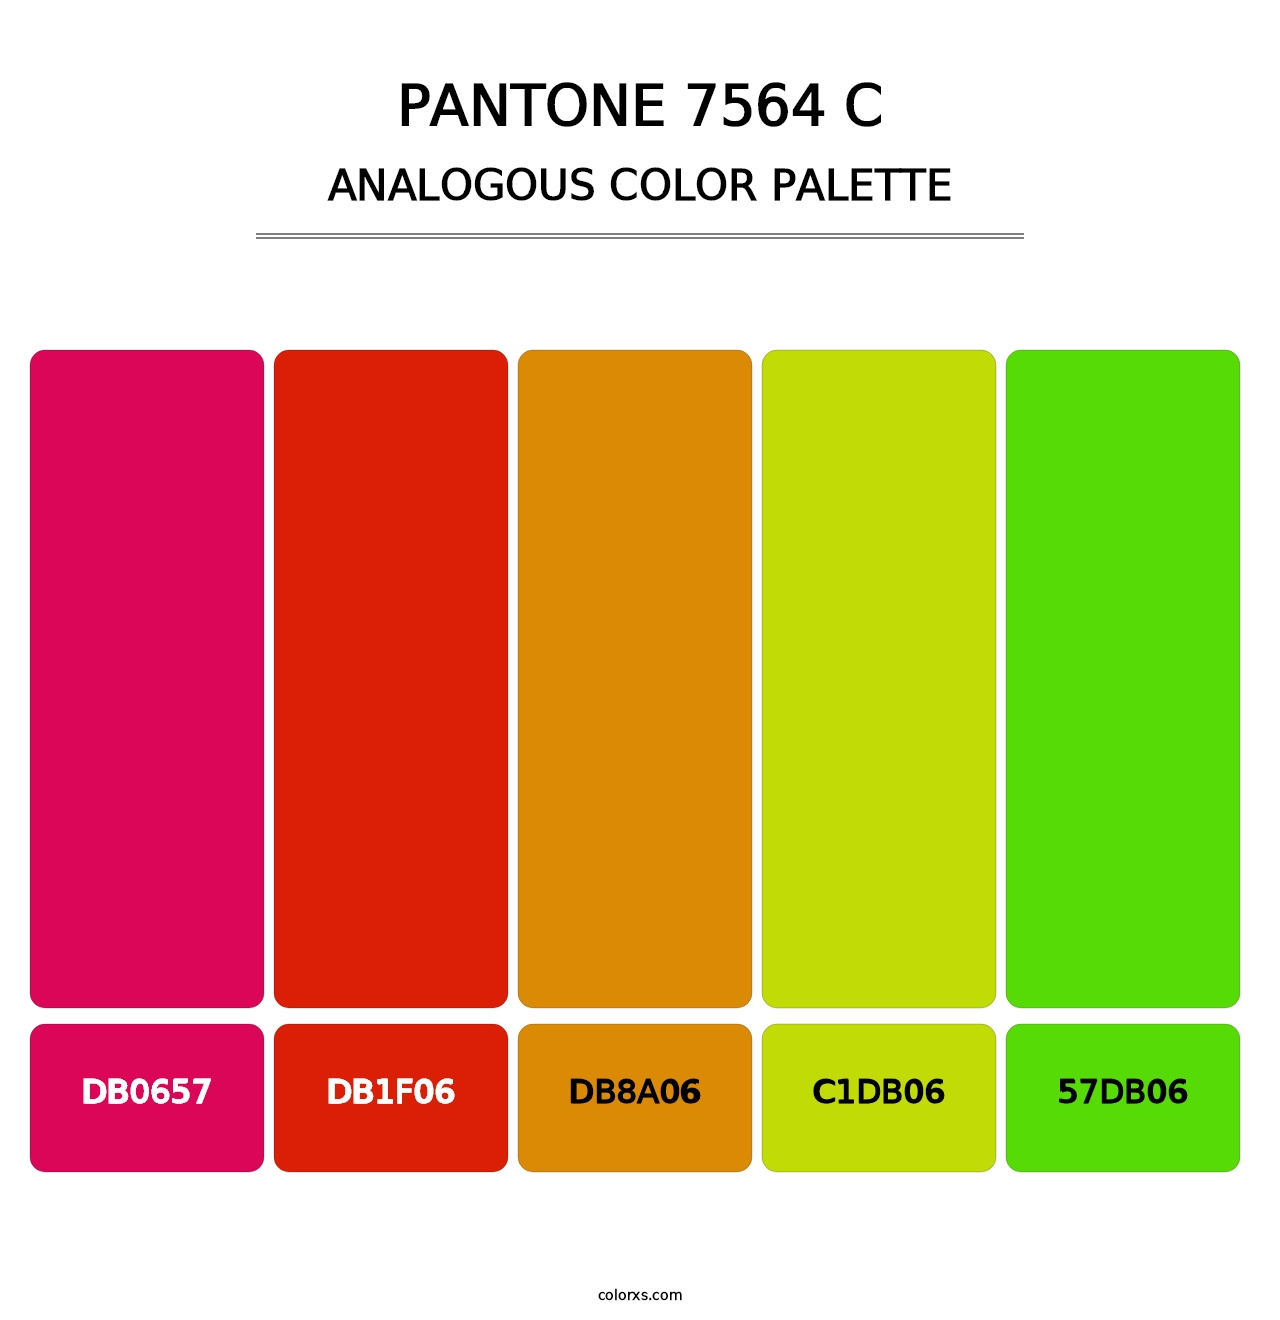 PANTONE 7564 C - Analogous Color Palette